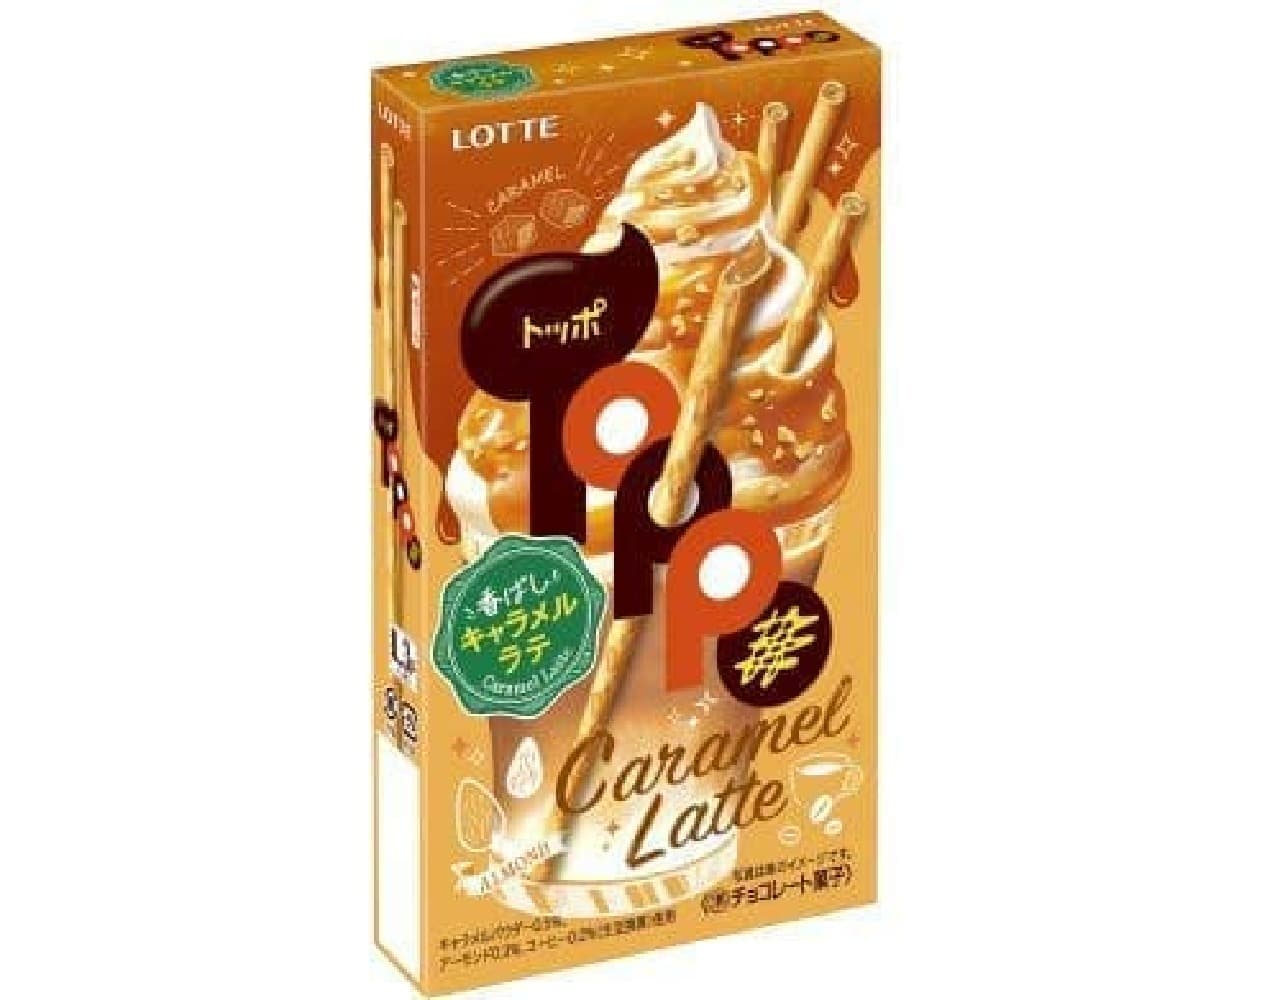 Lotte "Toppo [fragrant caramel latte]"